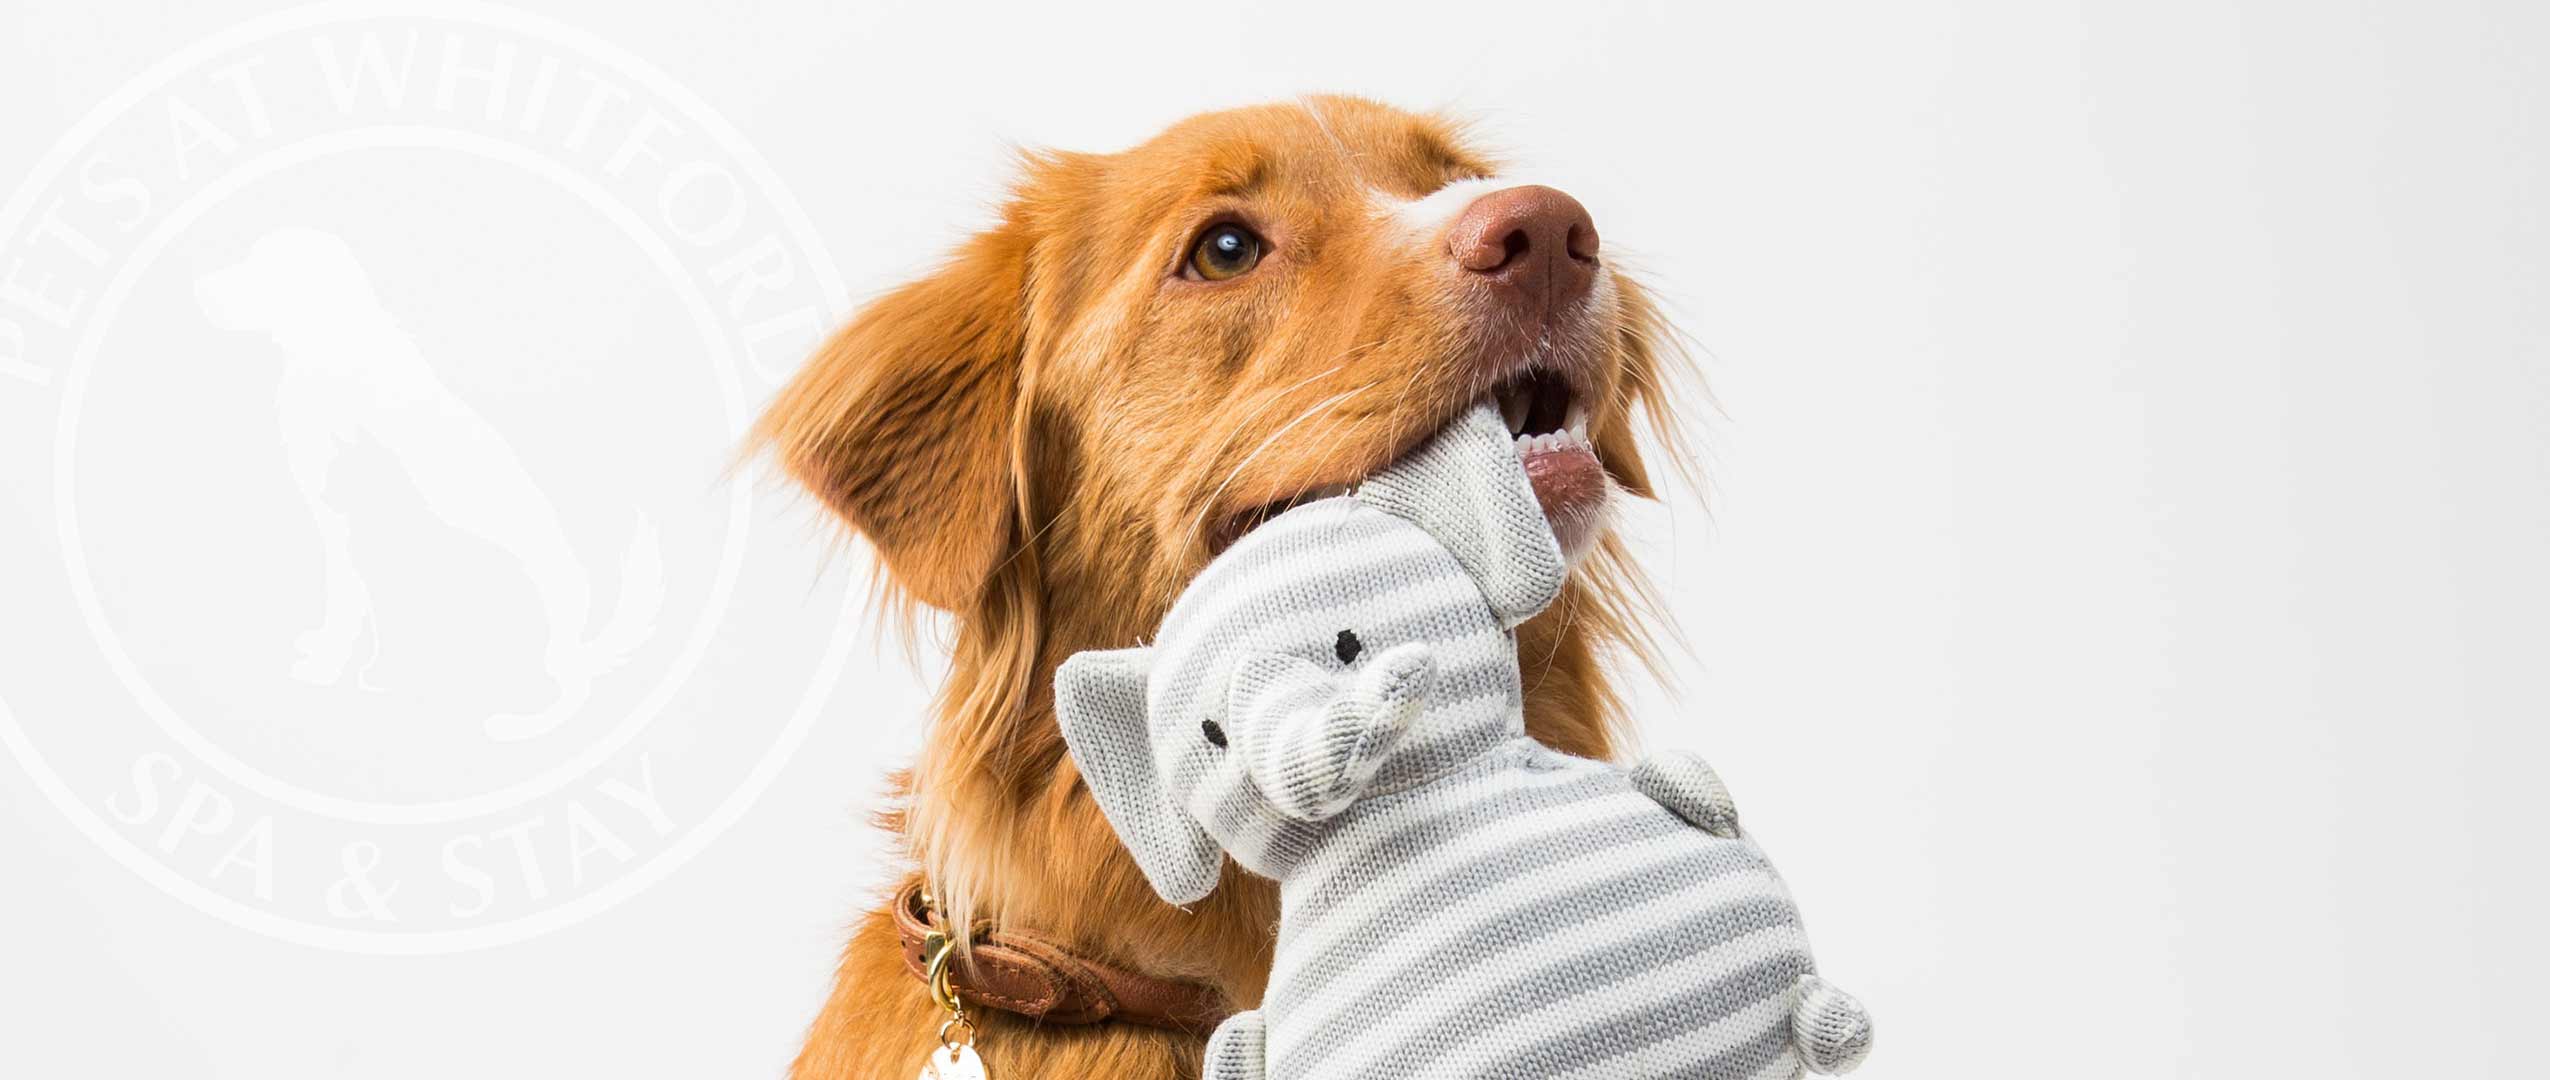 Dog holding toy elephant